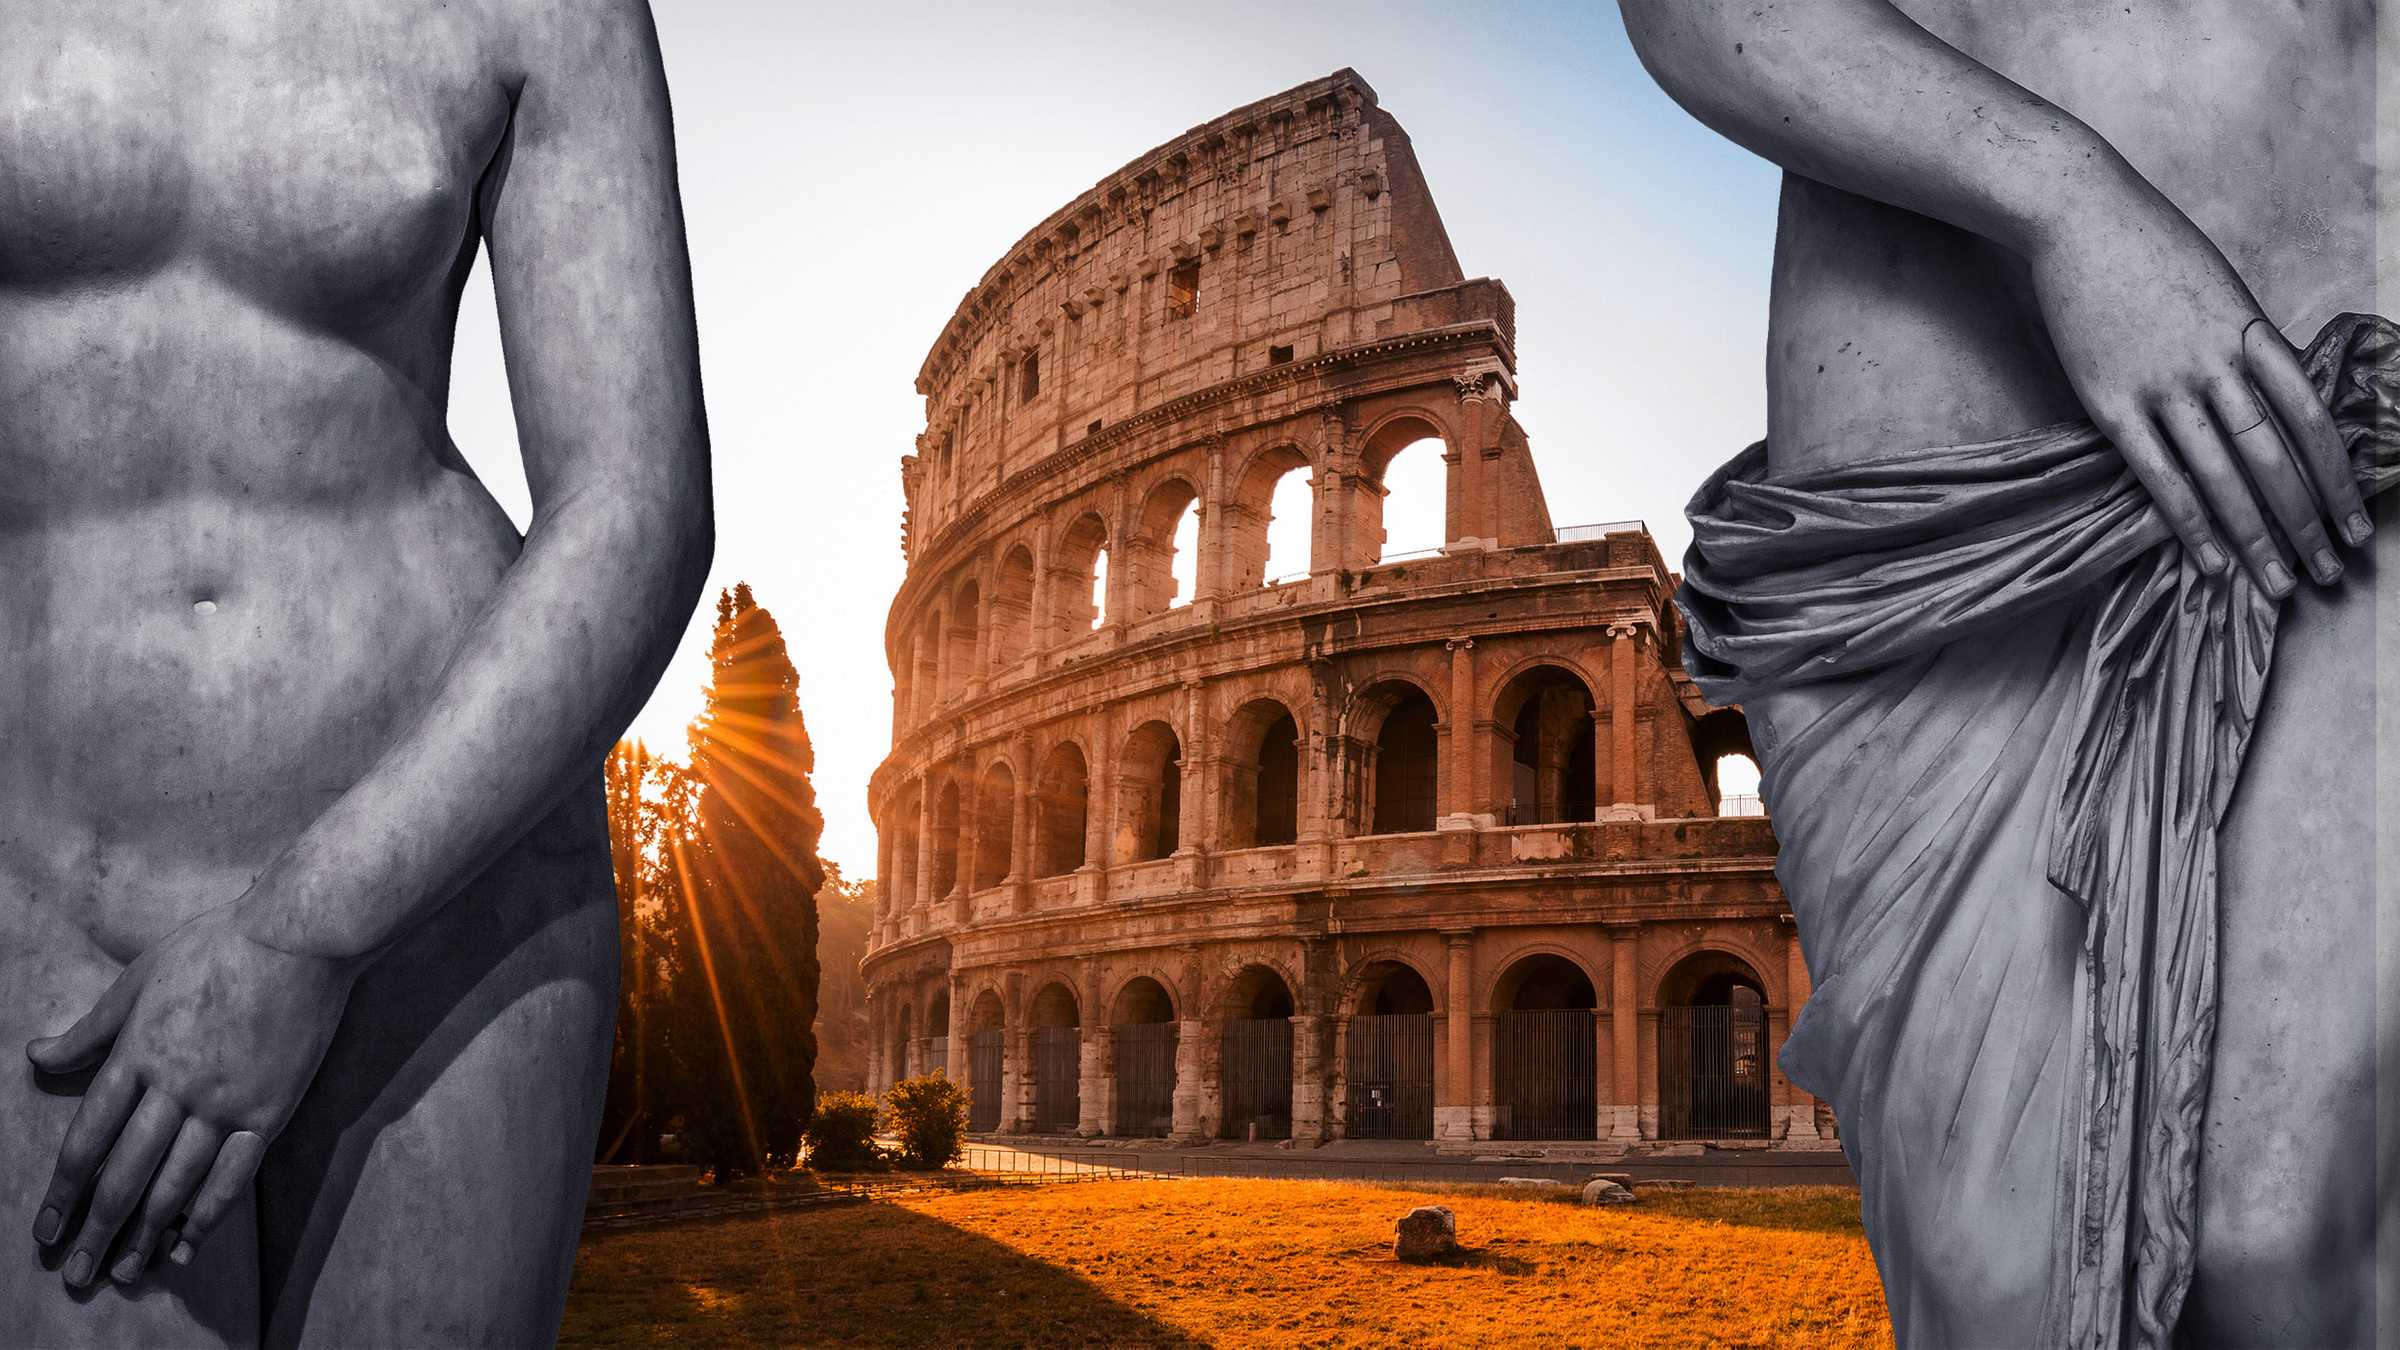 Древний Рим 2 - художественный порнофильм с одноголосым переводом